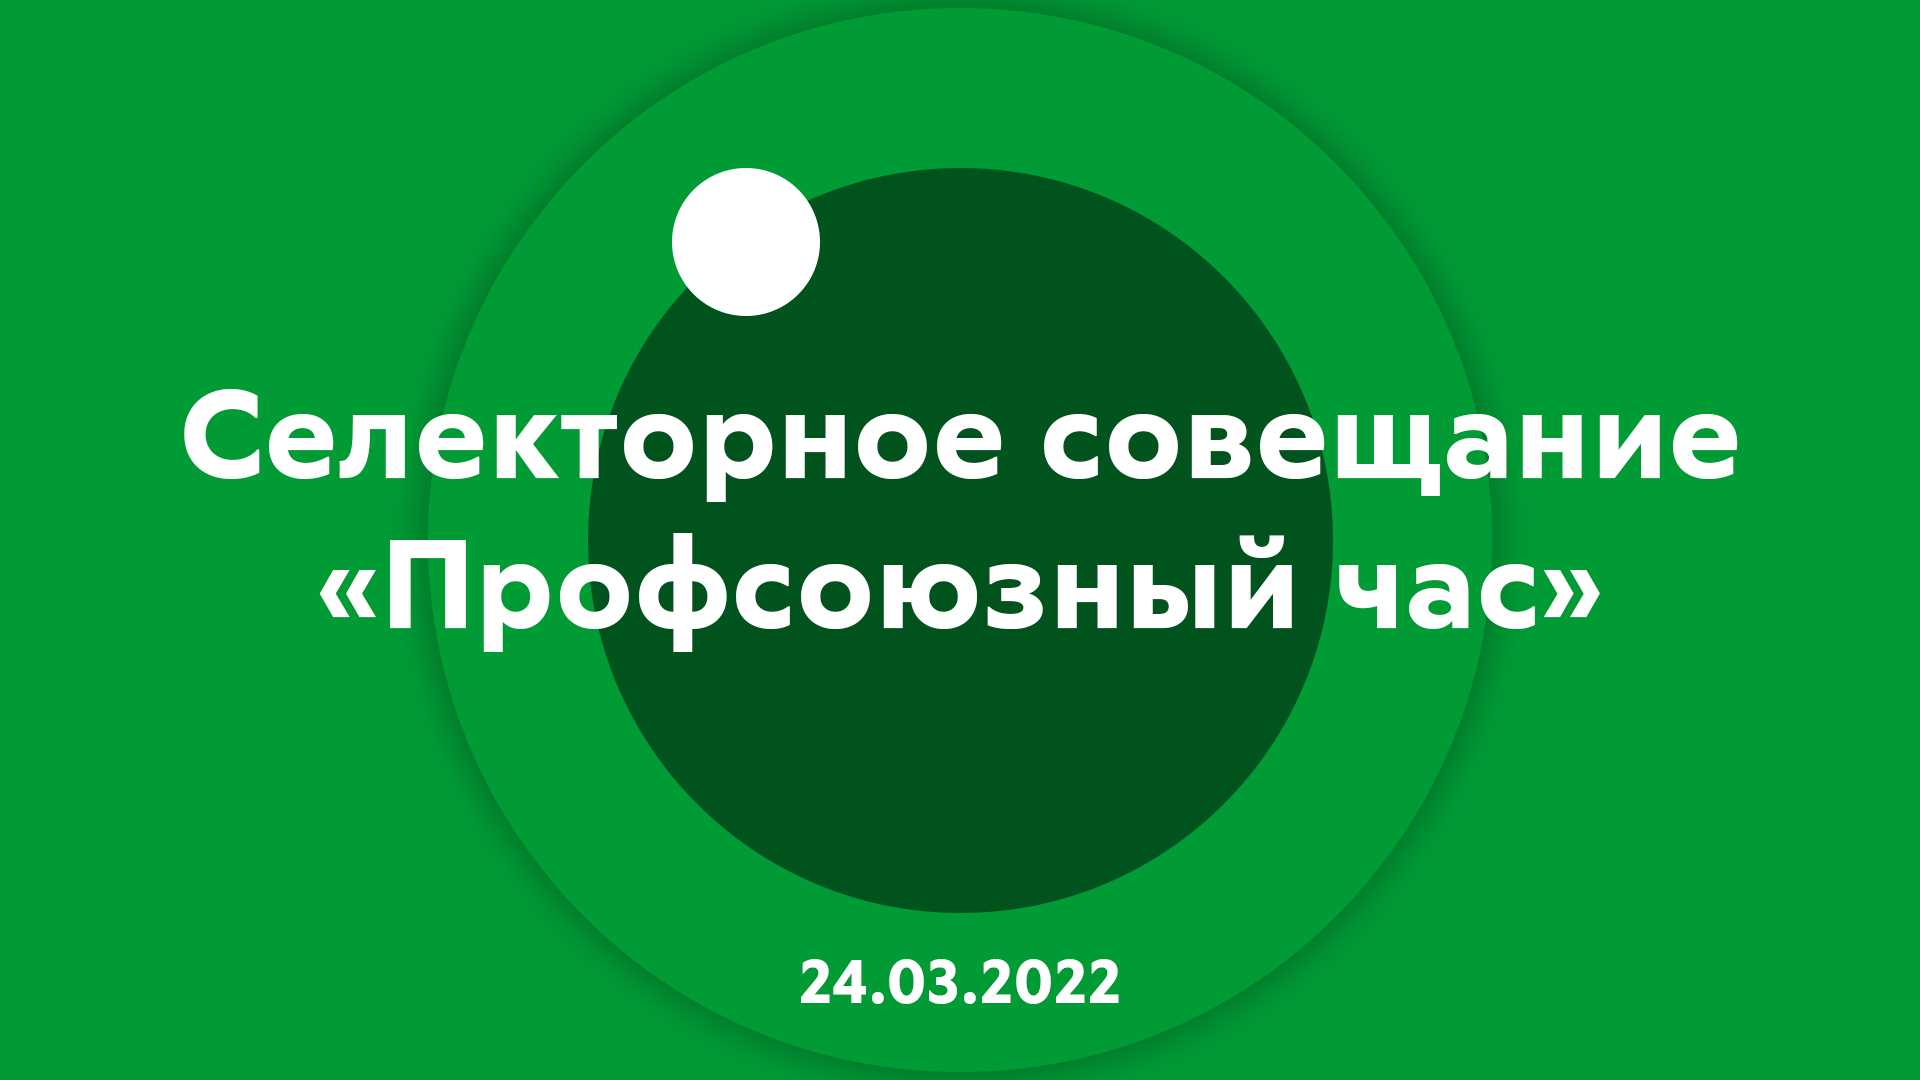 Селекторное совещание "Профсоюзный час" 24.03.2022